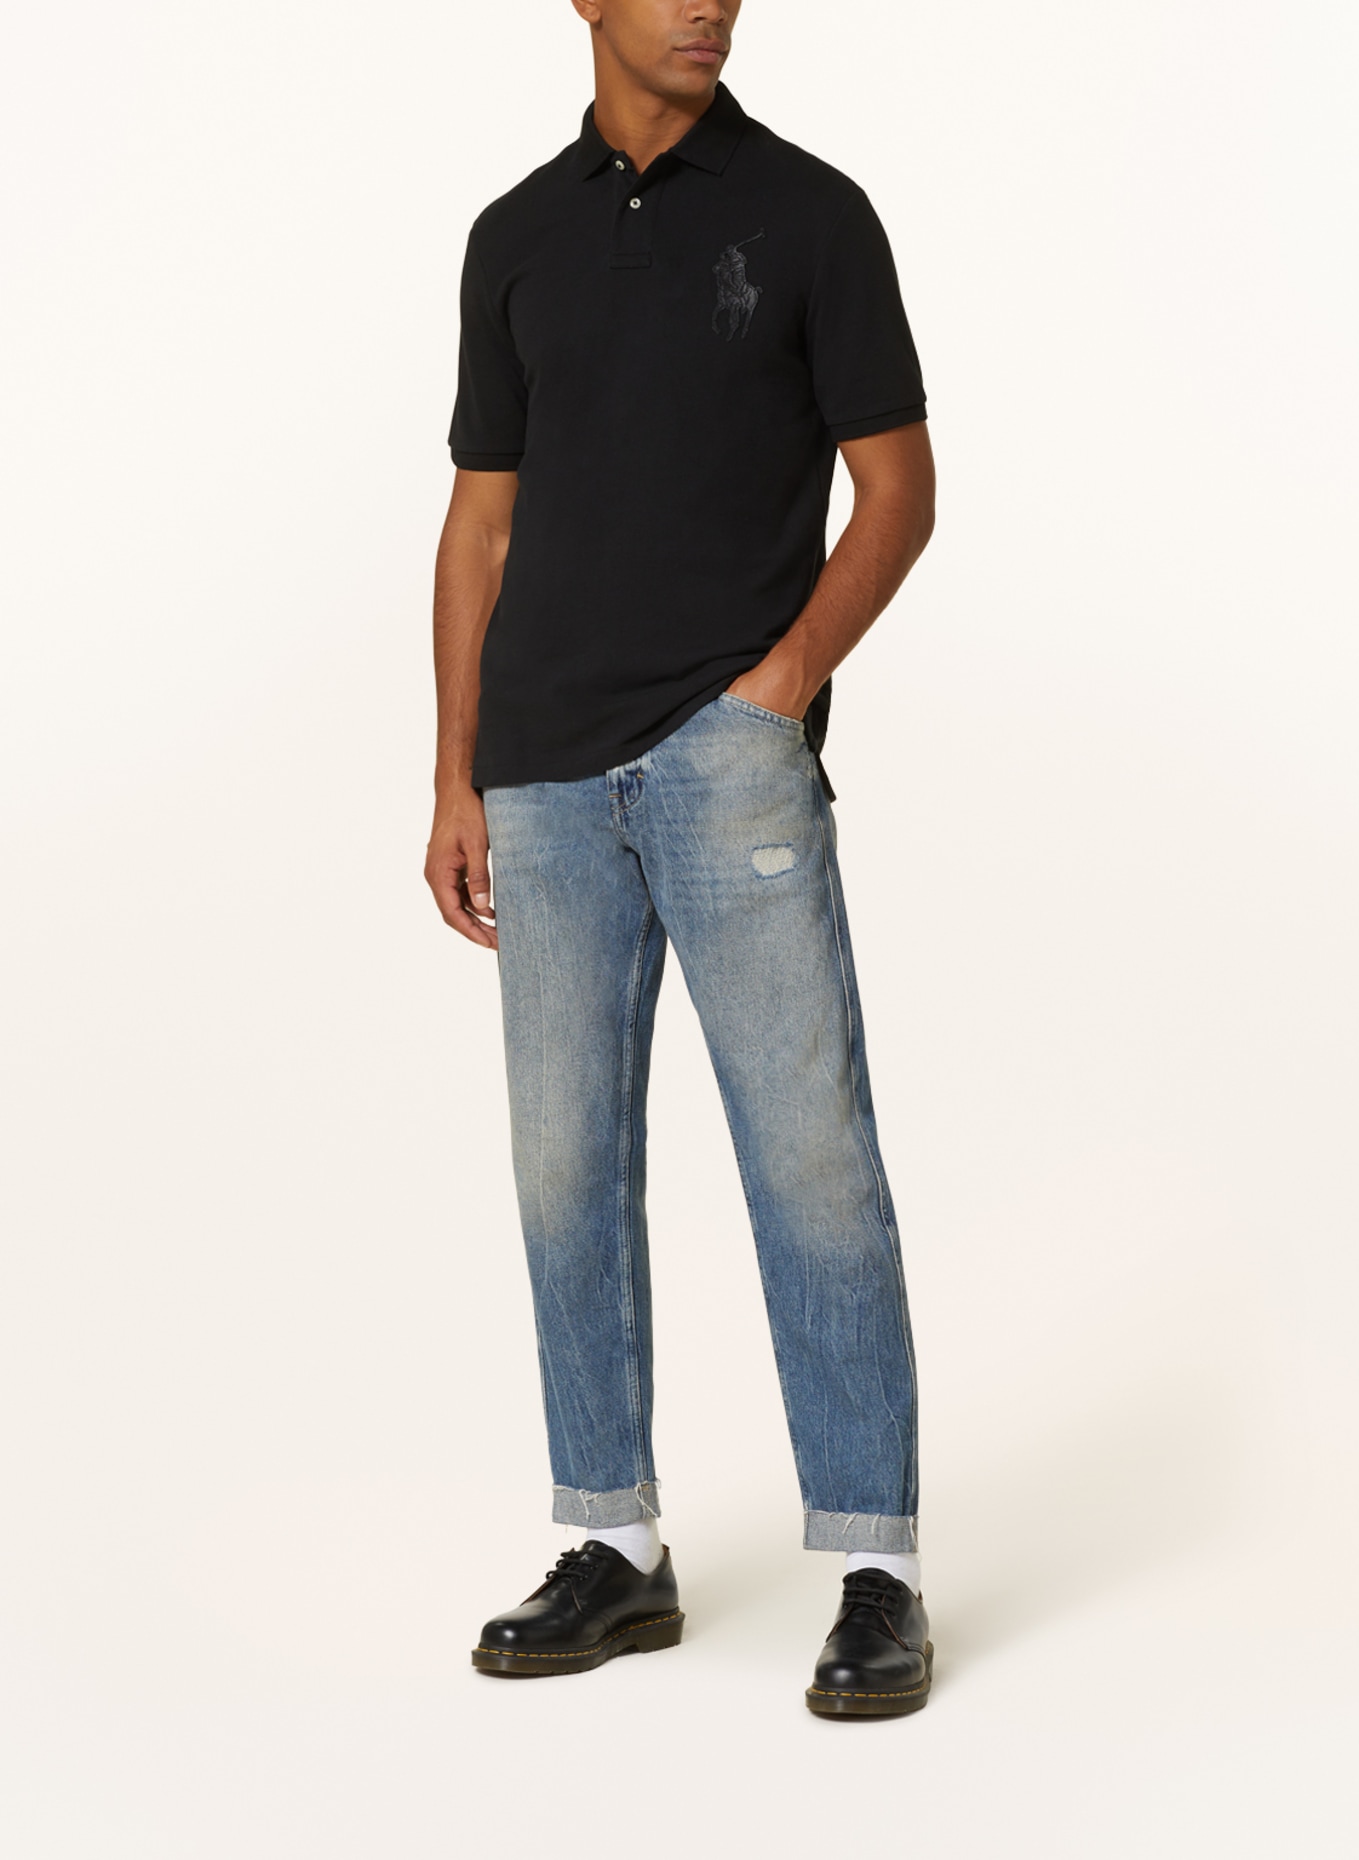 POLO RALPH LAUREN Piqué polo shirt classic fit, Color: BLACK (Image 2)